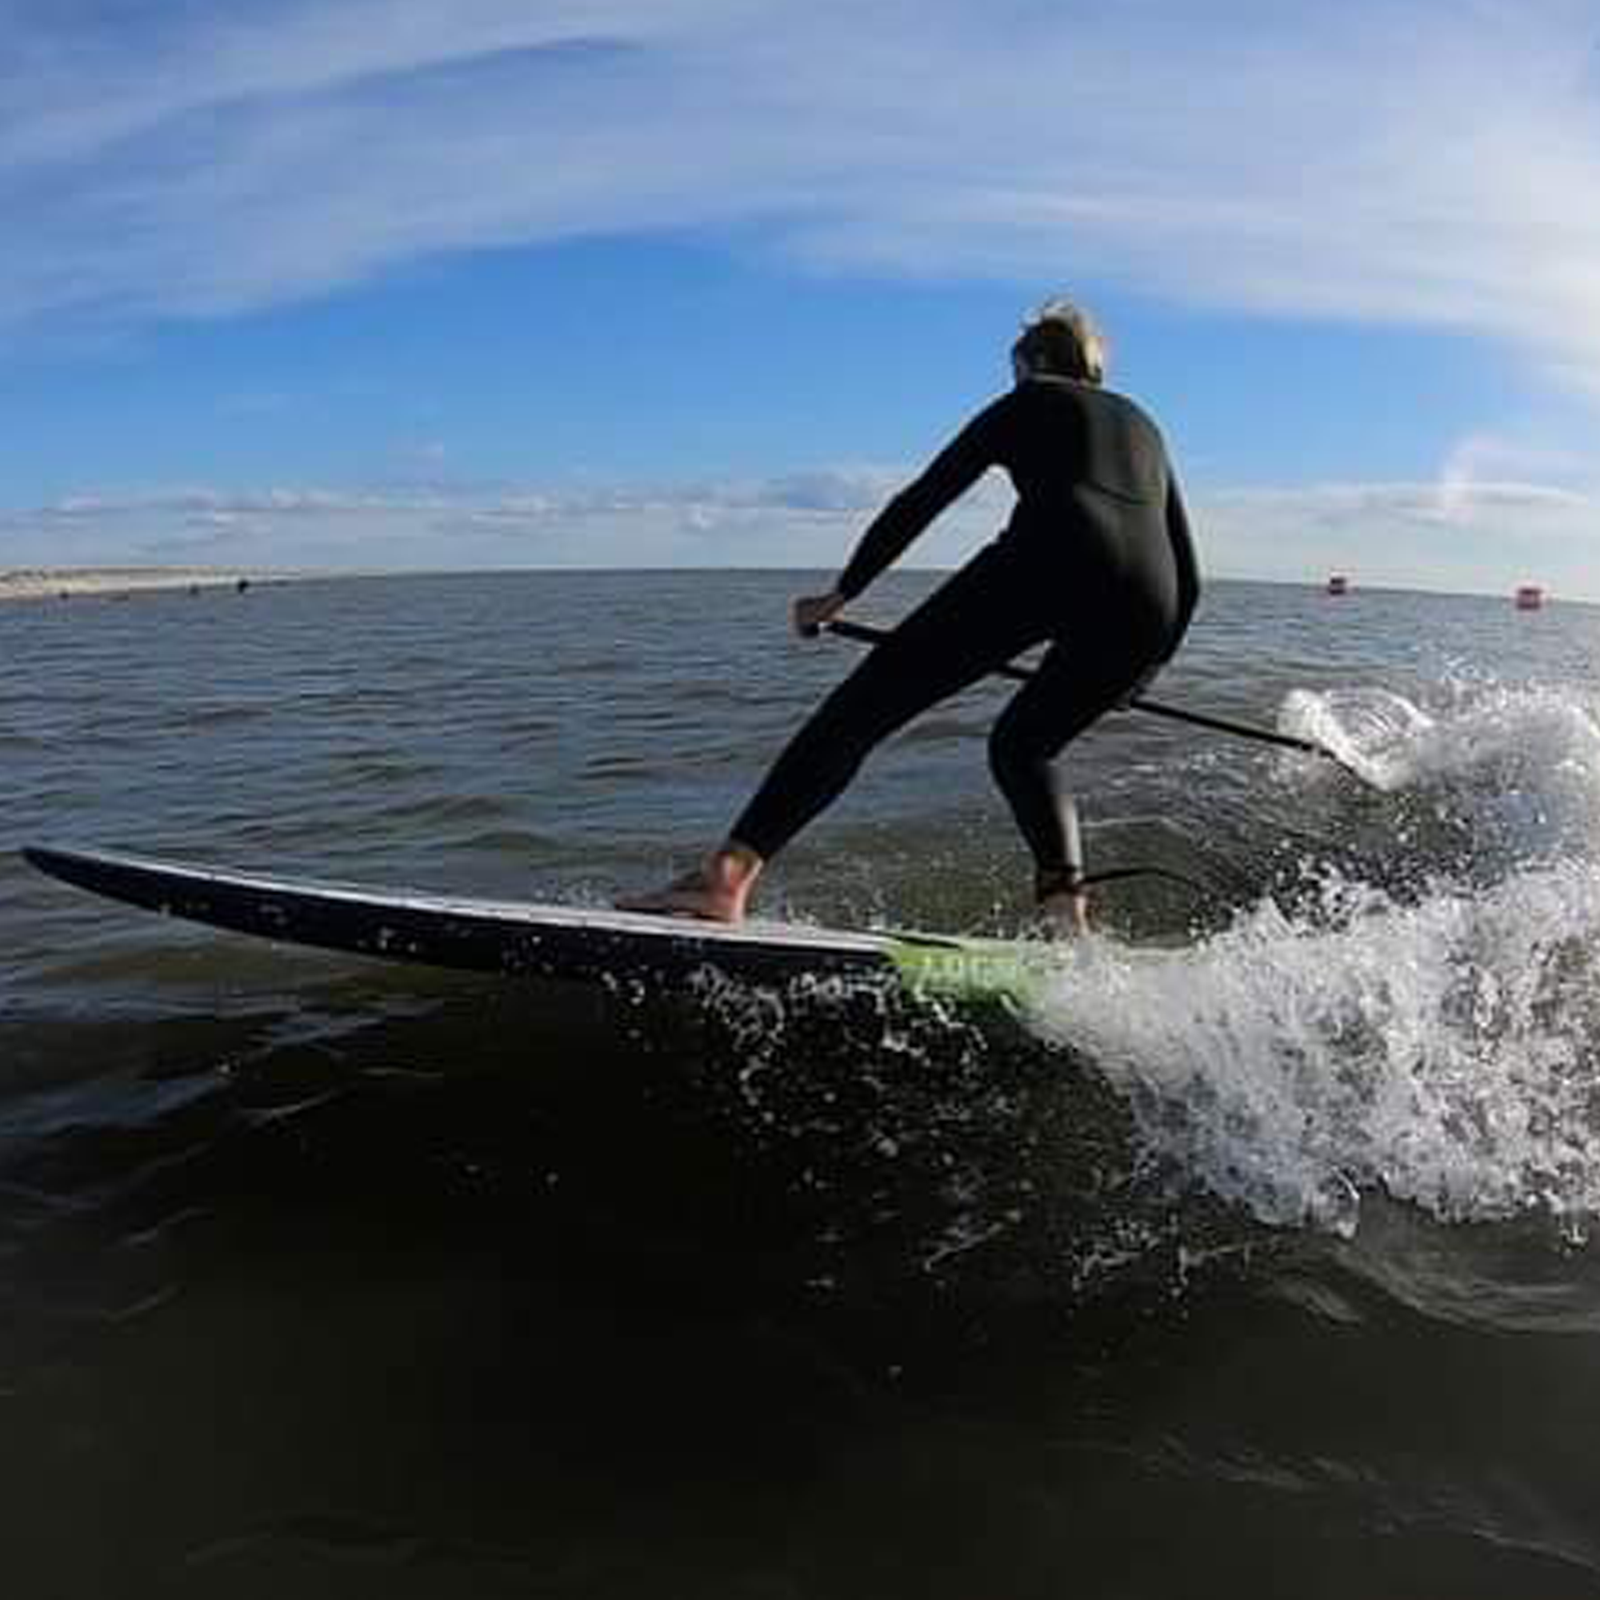 Cristina Doviak sup surfing at Euros